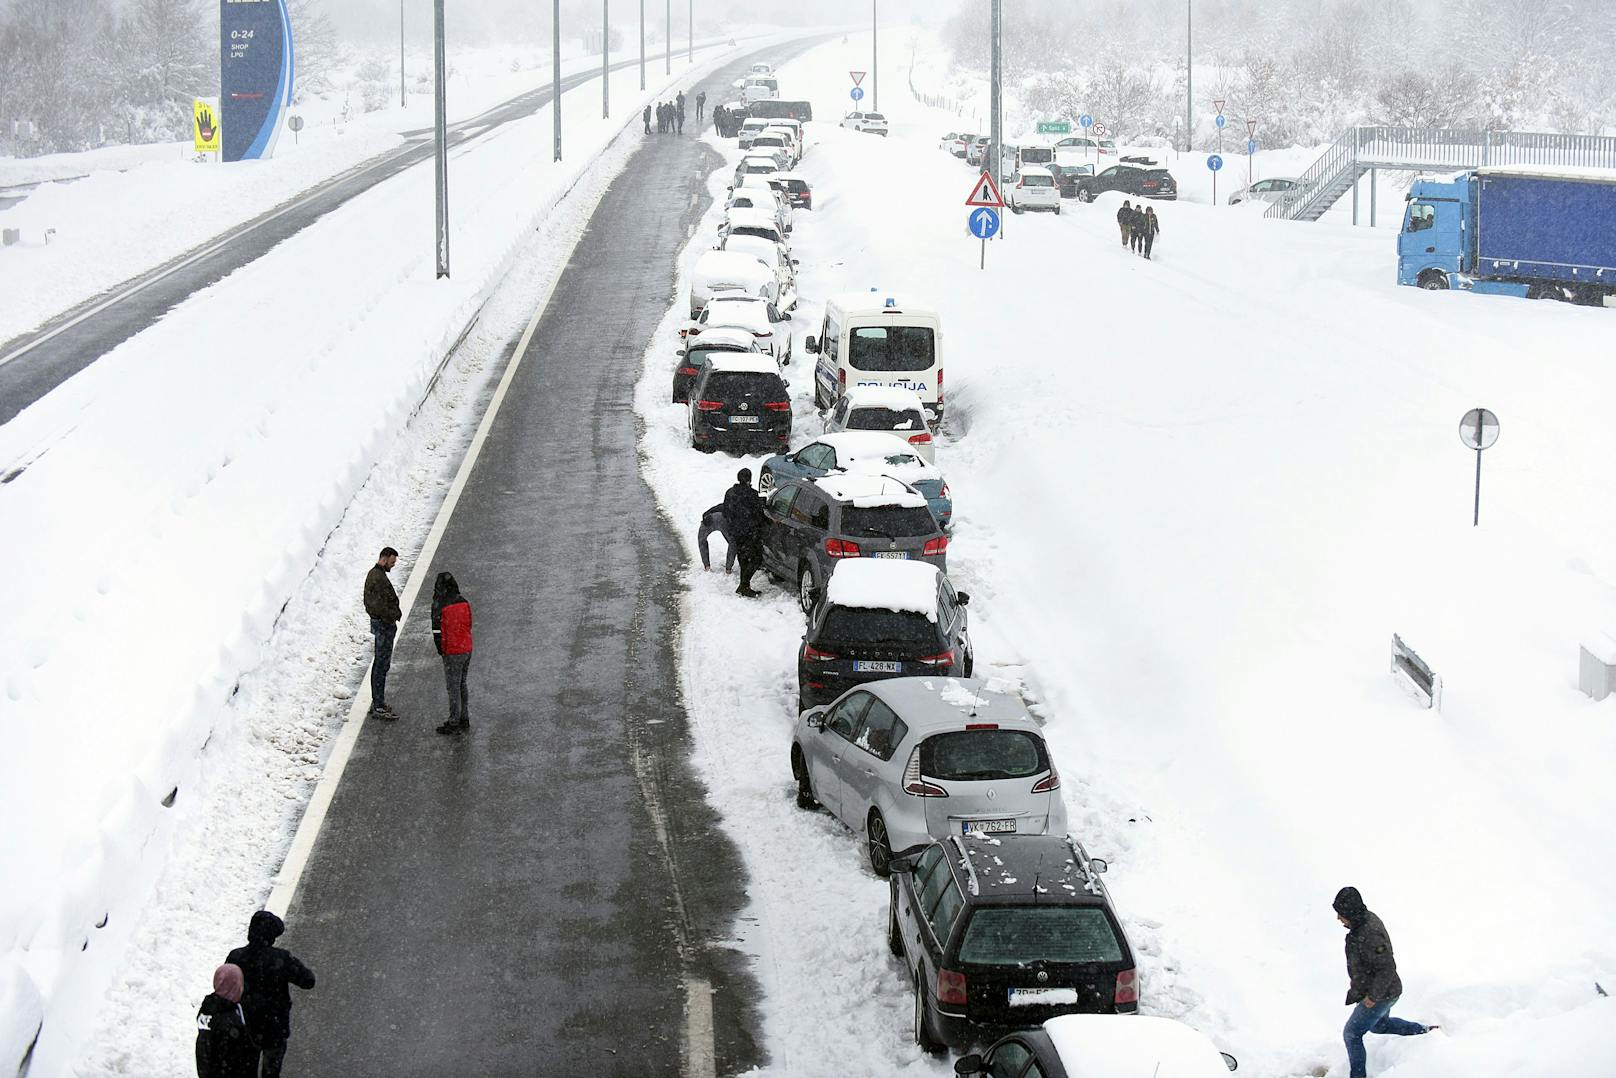 Hunderte Menschen haben in Kroatien die Nacht in ihren Autos oder in Cafés und Aufnahmezentren verbracht, nachdem orkanartige Bora-Winde gepaart mit heftigen Schneefällen ein Verkehrs-Chaos verursacht und Teile des Landes abgeschnitten haben.